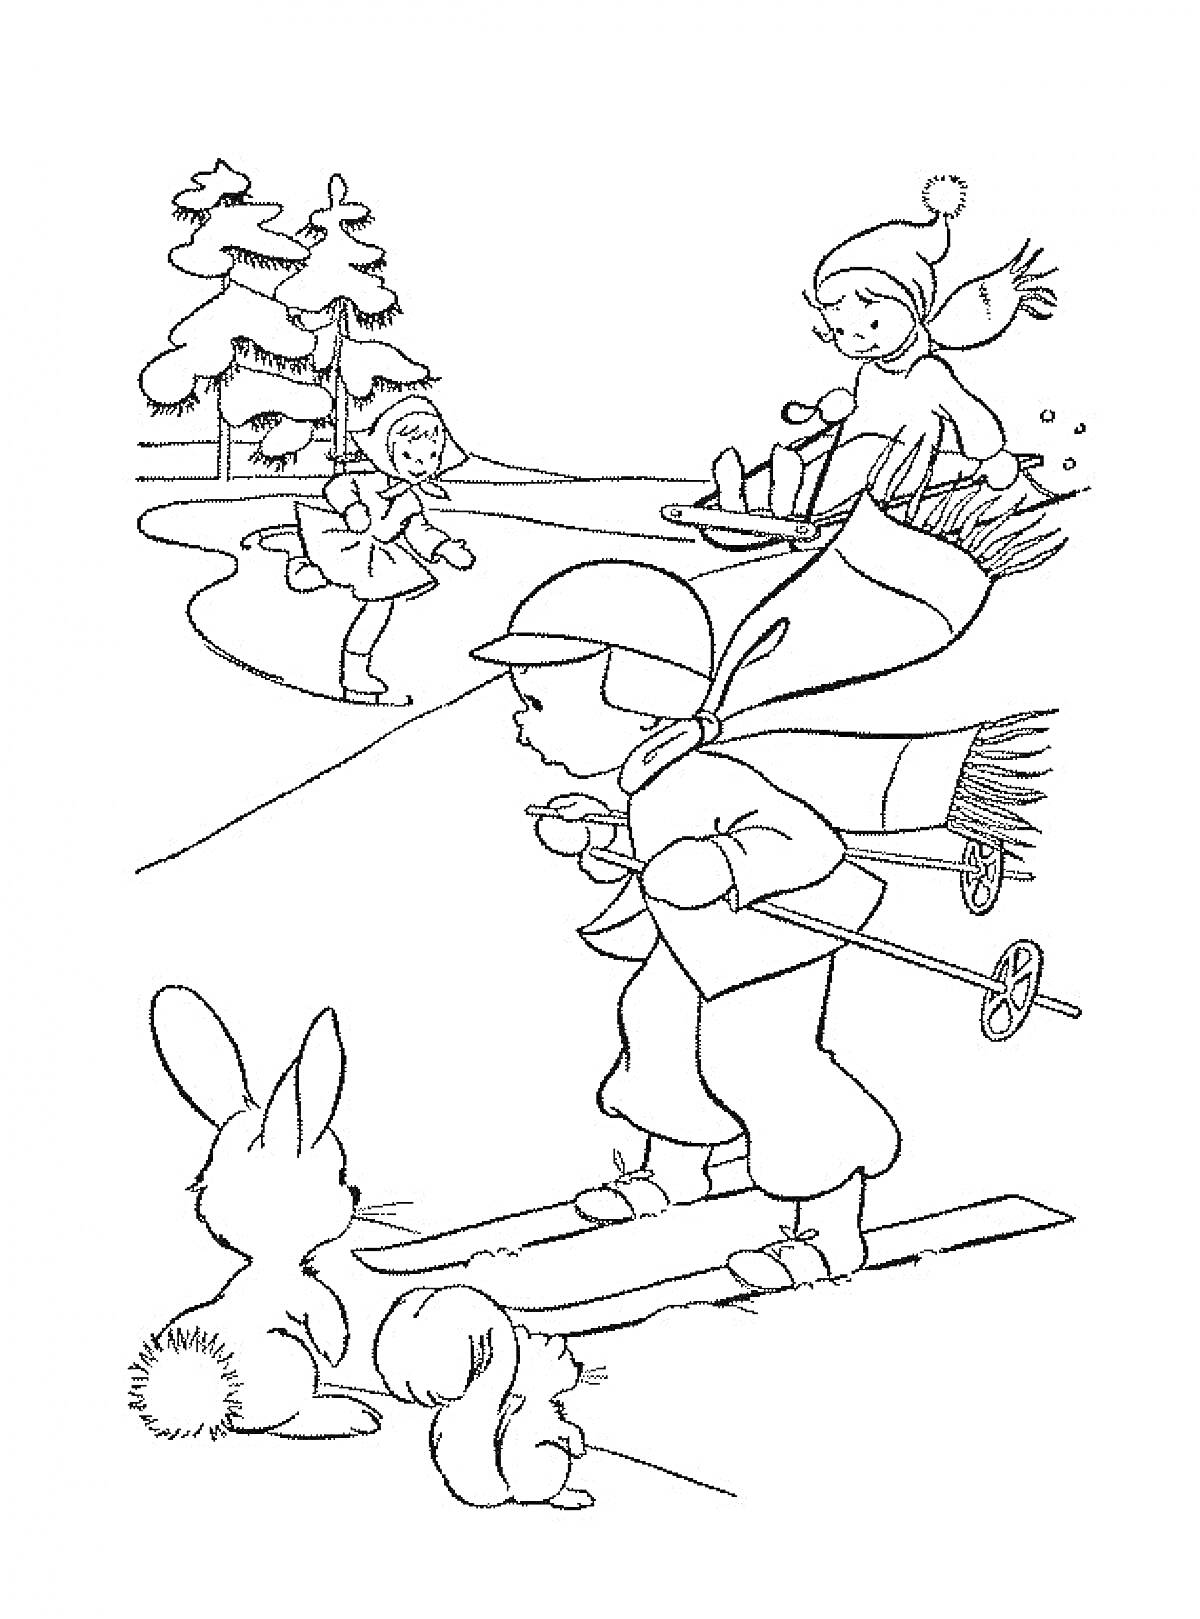 Лыжник с палками, мальчик на коньках, девочка на санках, деревья, два кролика